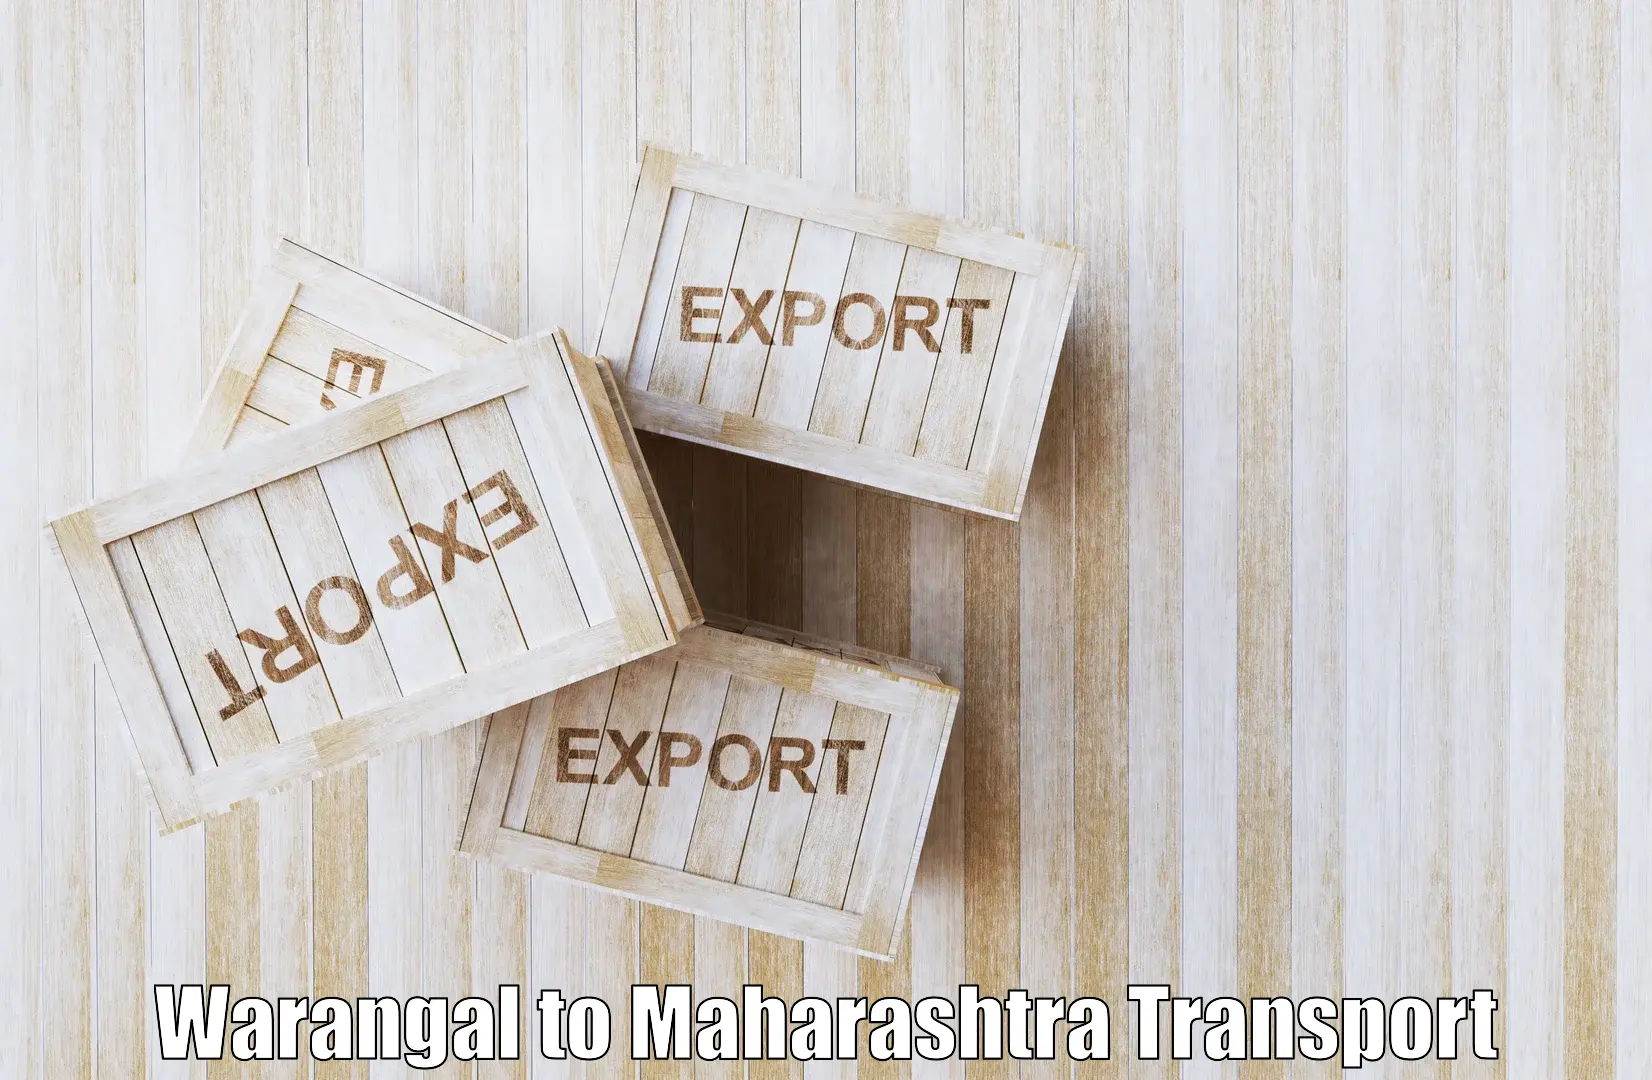 Intercity transport Warangal to Nagpur